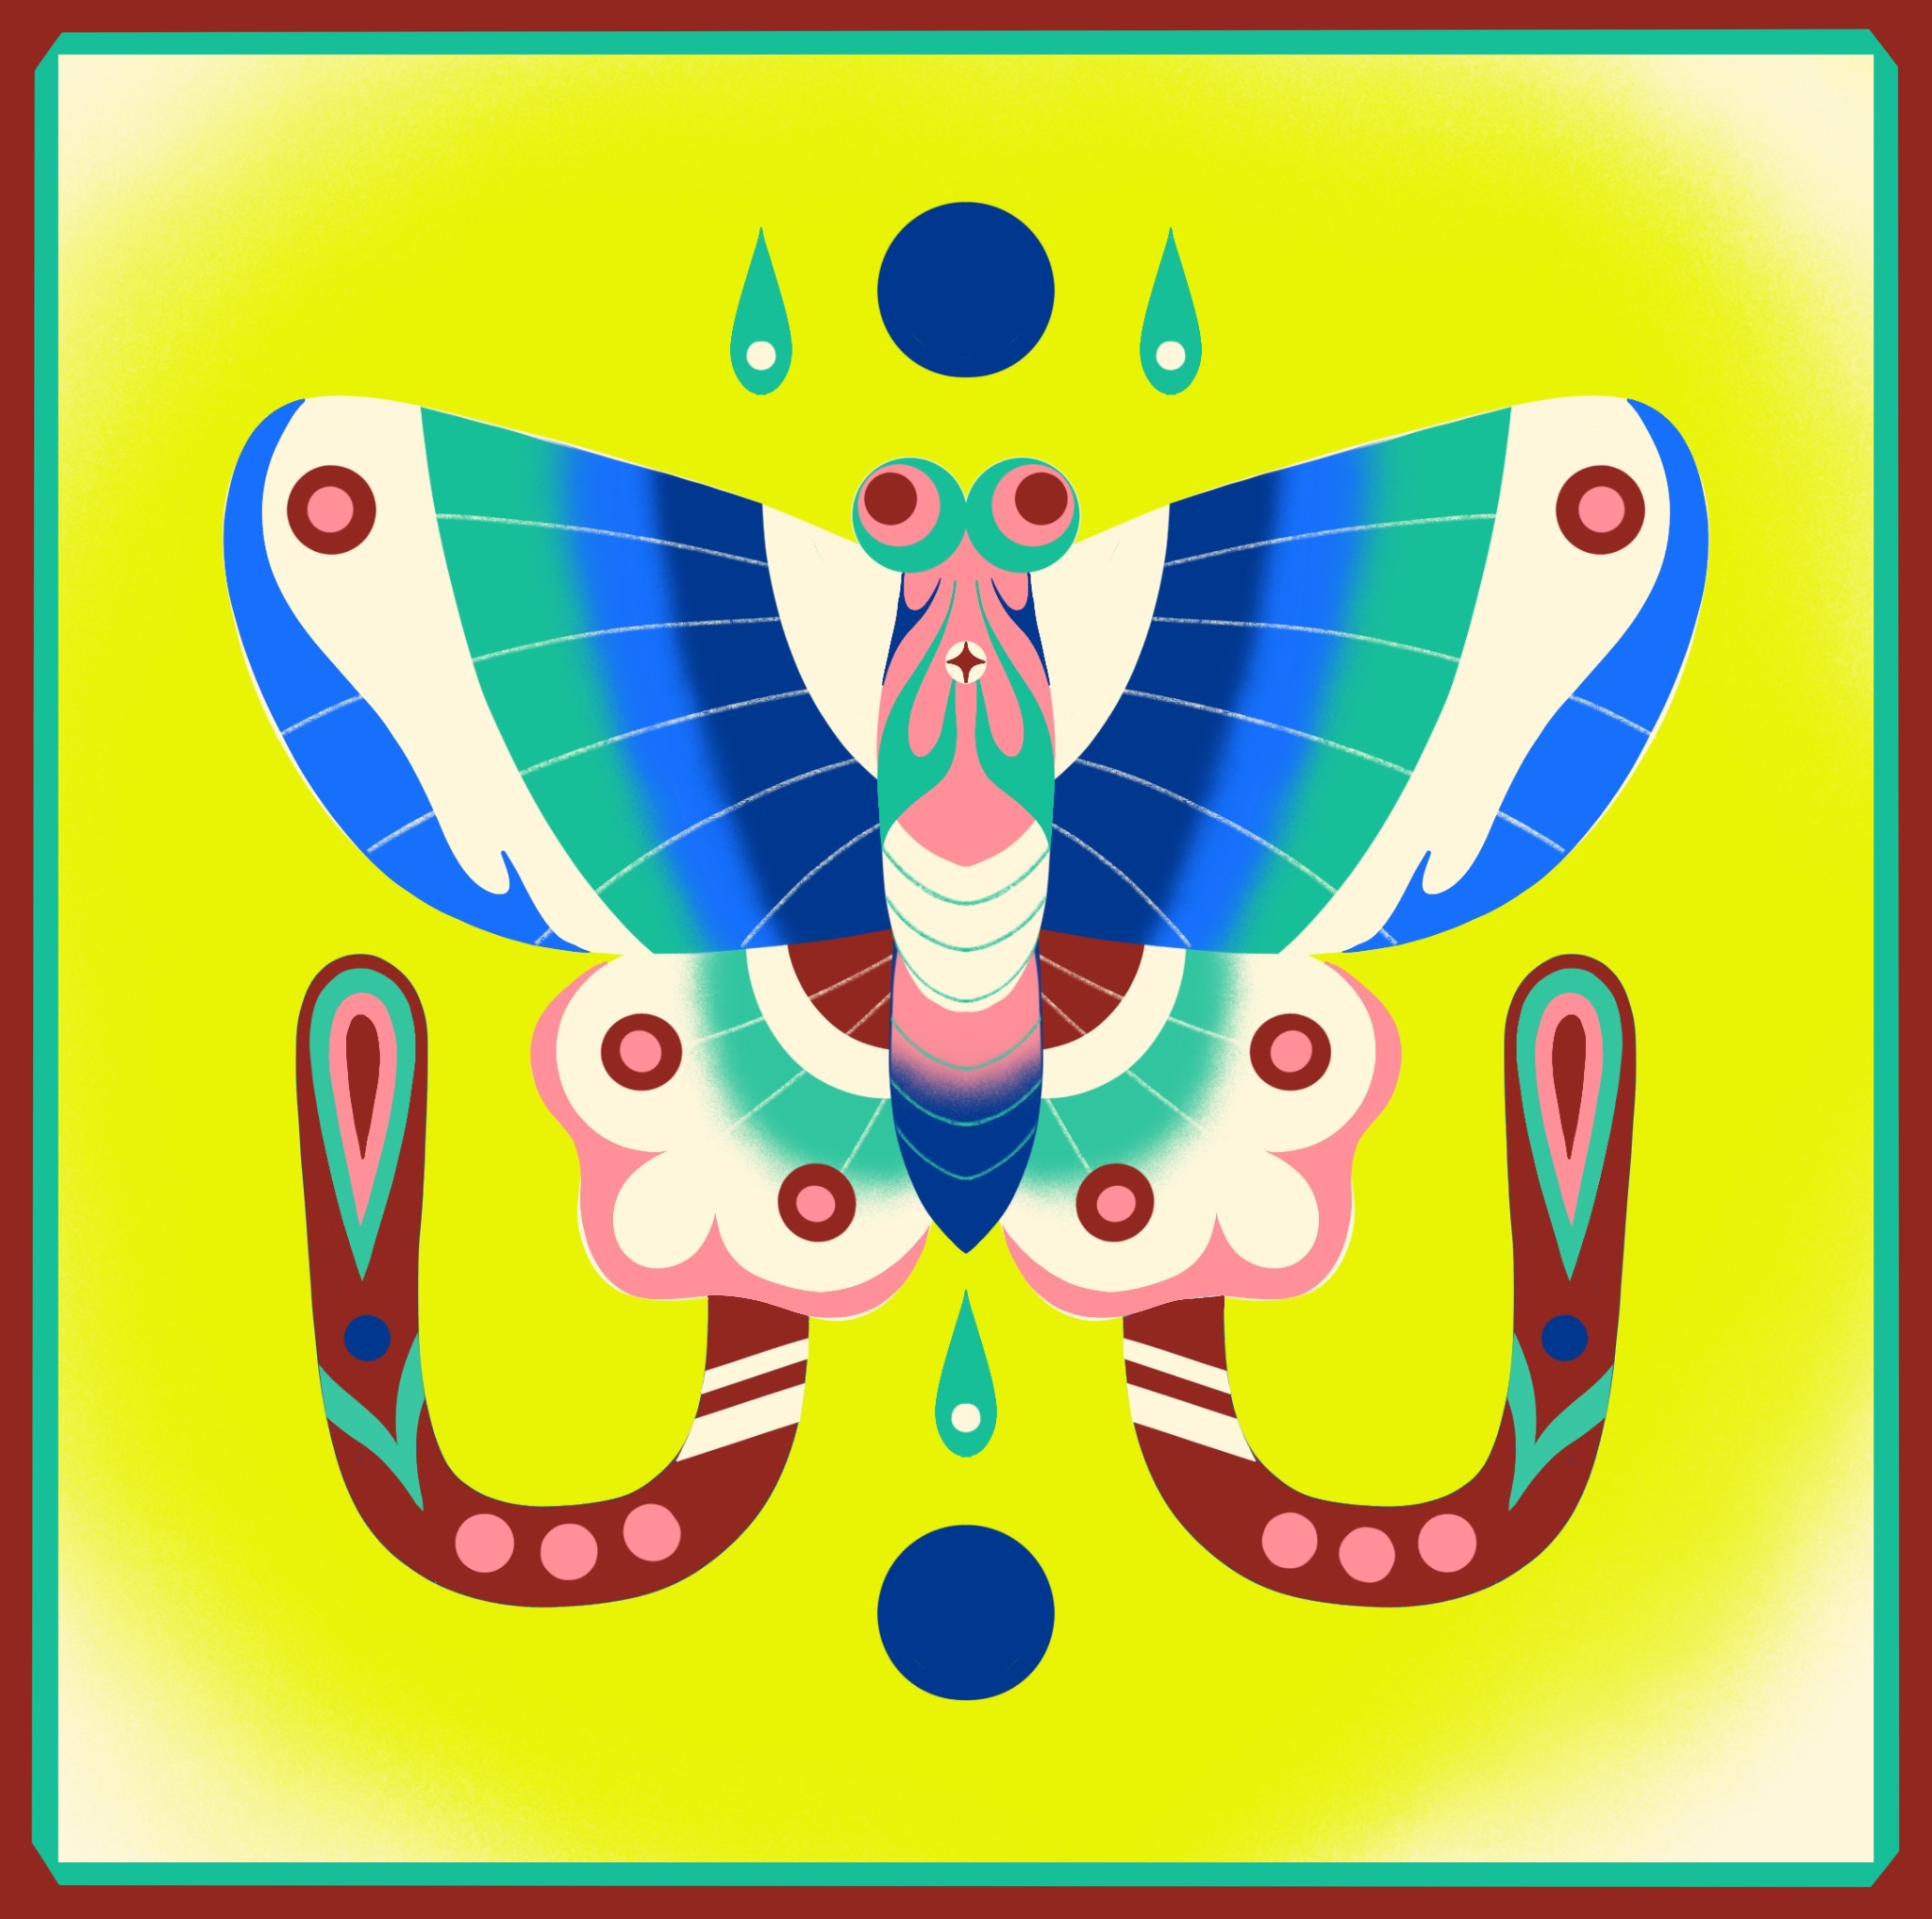 drugelio iliustracija ryškiai geltoname fone.  drugelis pasižymi ryškiais raudonos, rožinės ir mėlynos atspalviais.